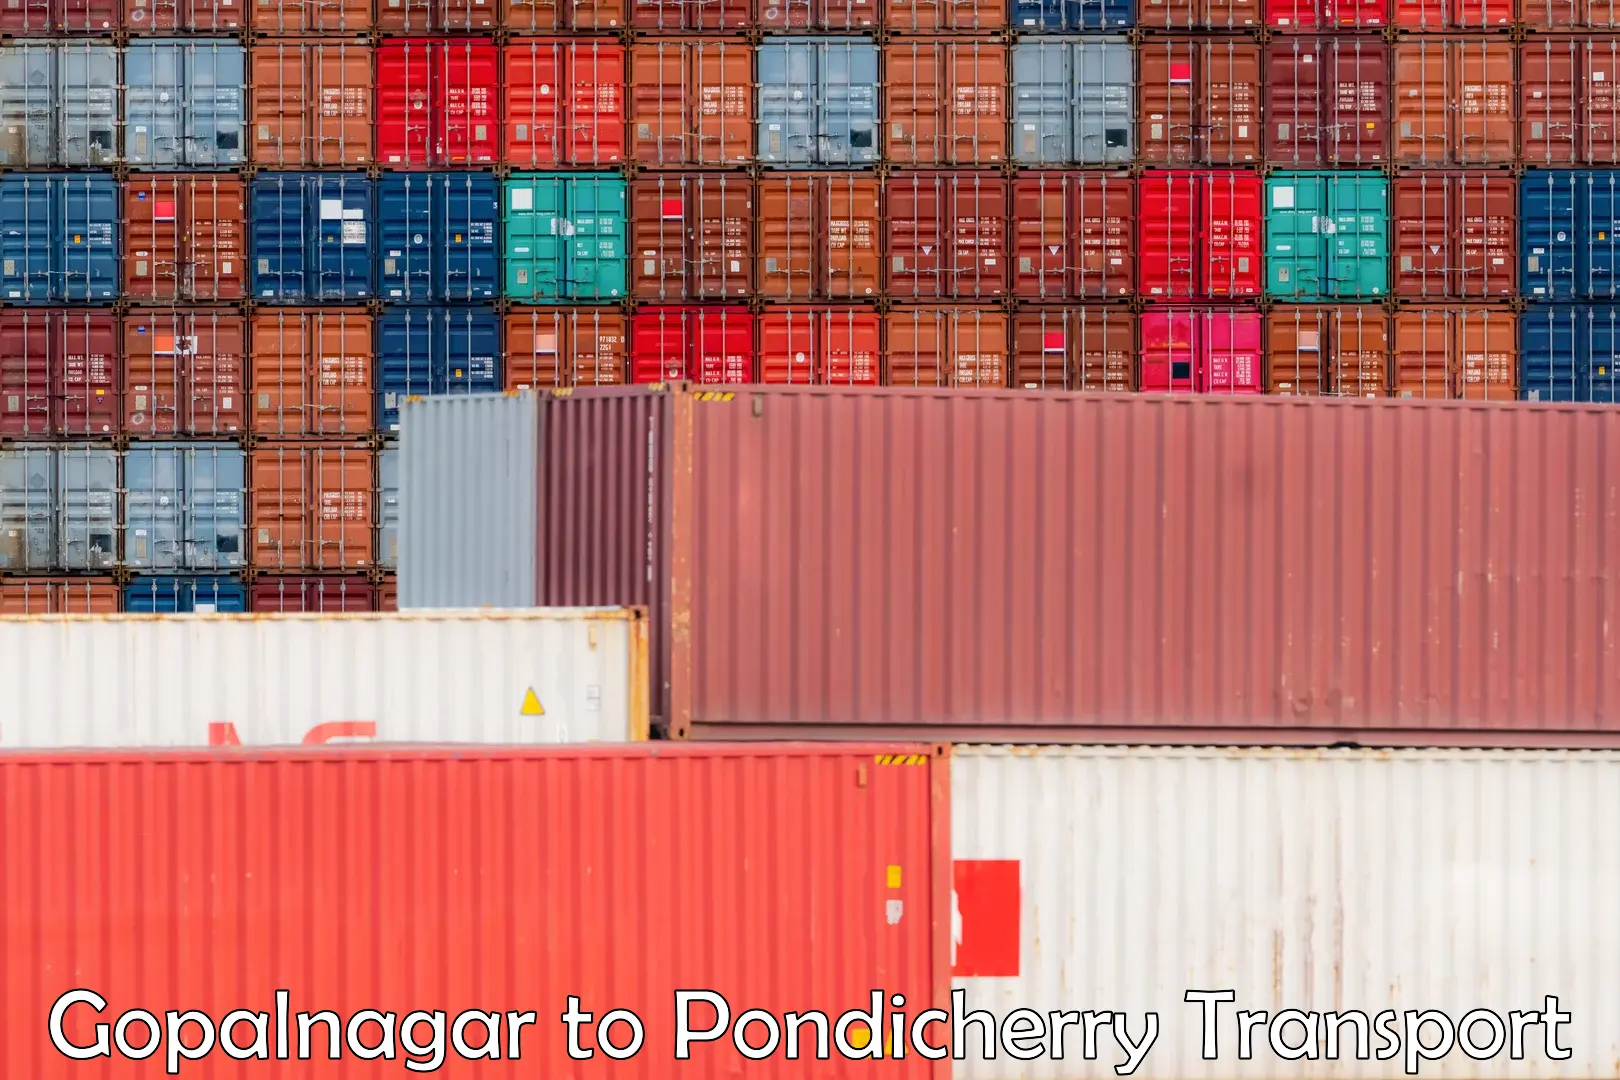 Container transport service Gopalnagar to Pondicherry